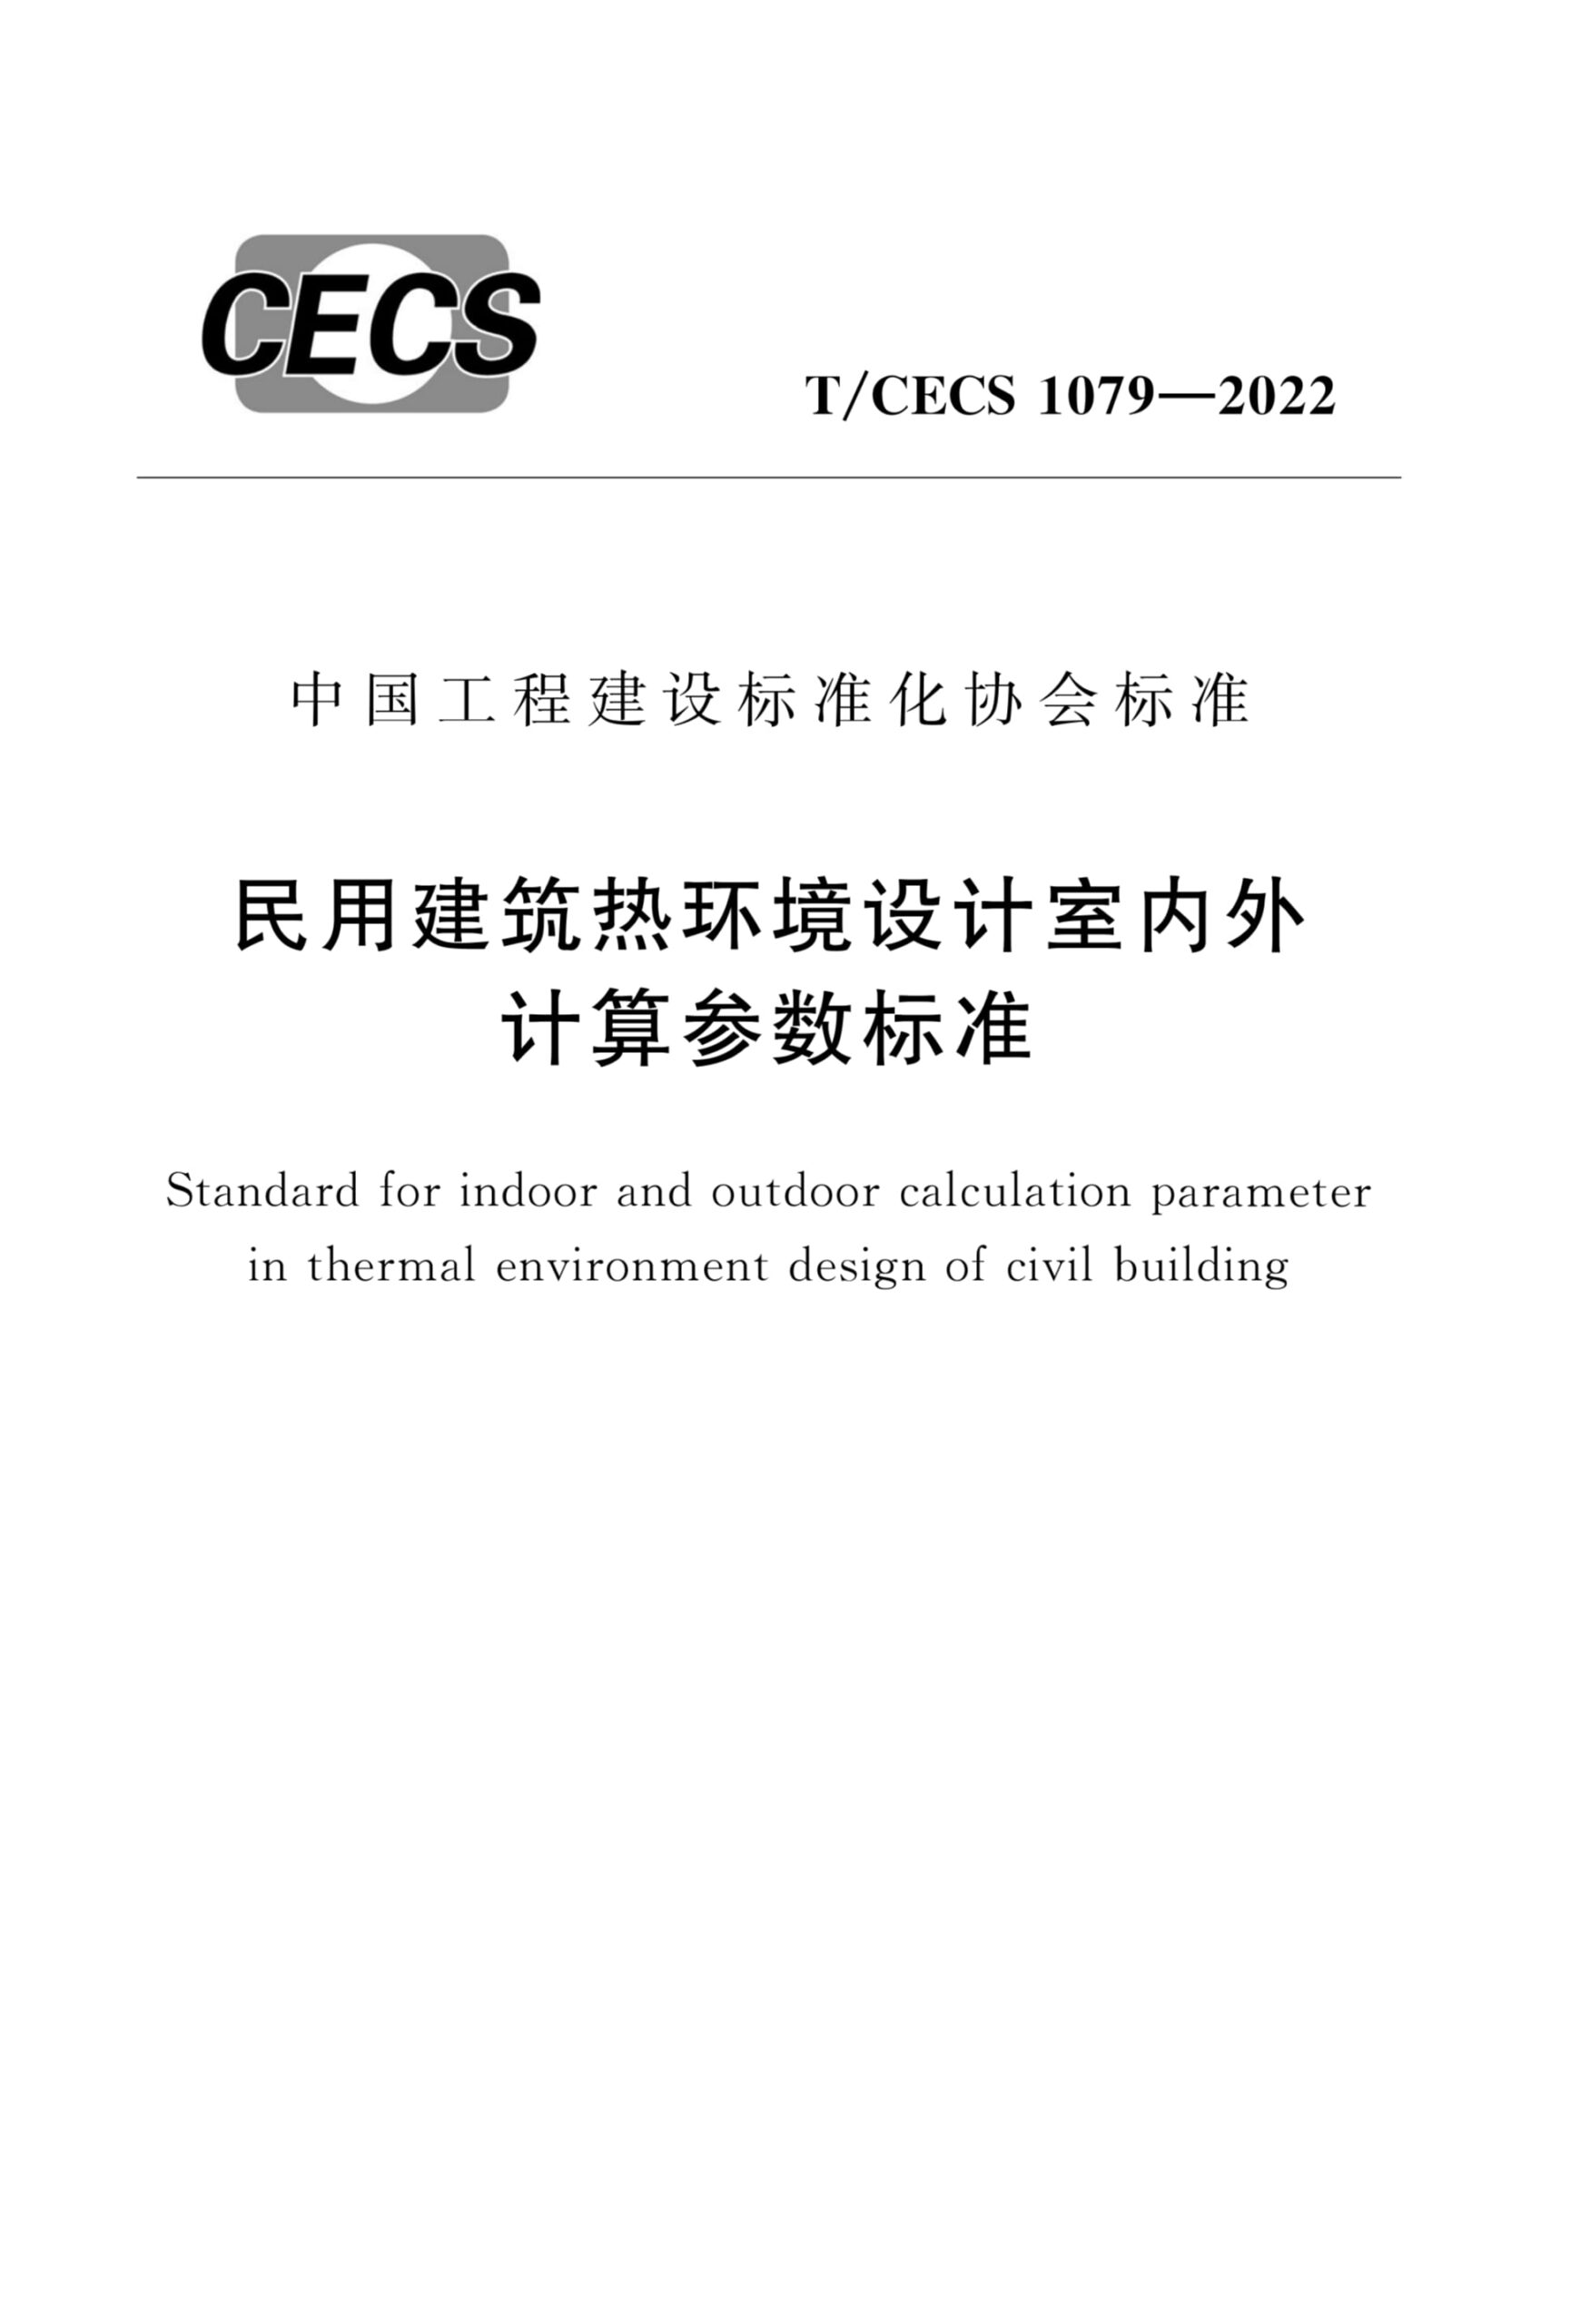 T/CECS 1079-2022 民用建筑热环境设计室内外计算参数标准